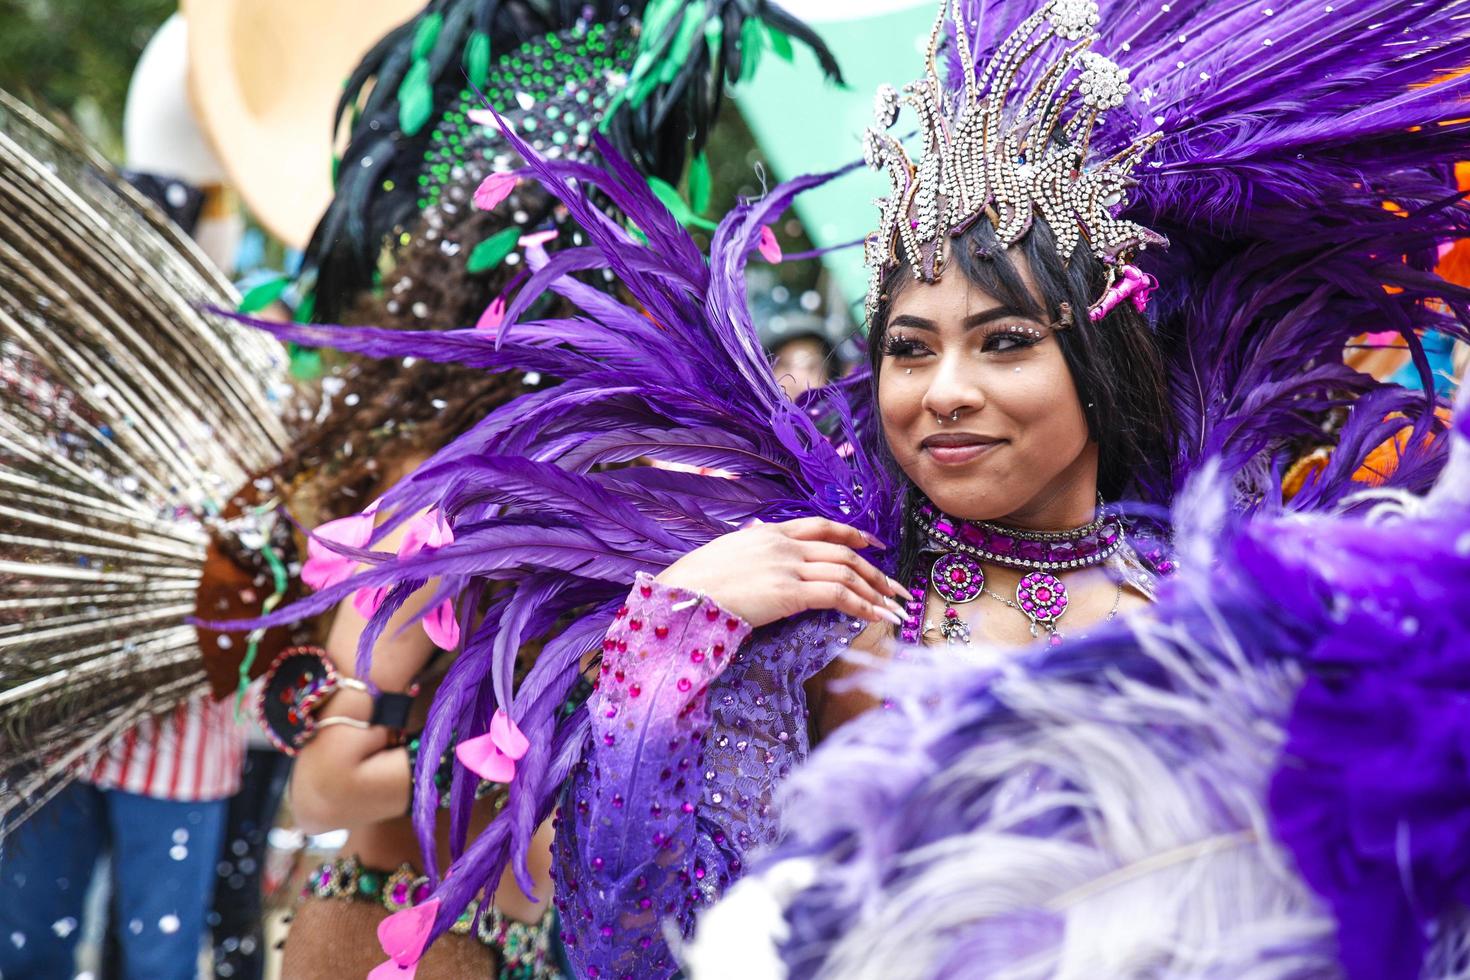 diano marina, Itália, 15-03-2023 - dentro celebração do carnaval, uma brasileiro dançarino sorri. - viagem reportagem foto